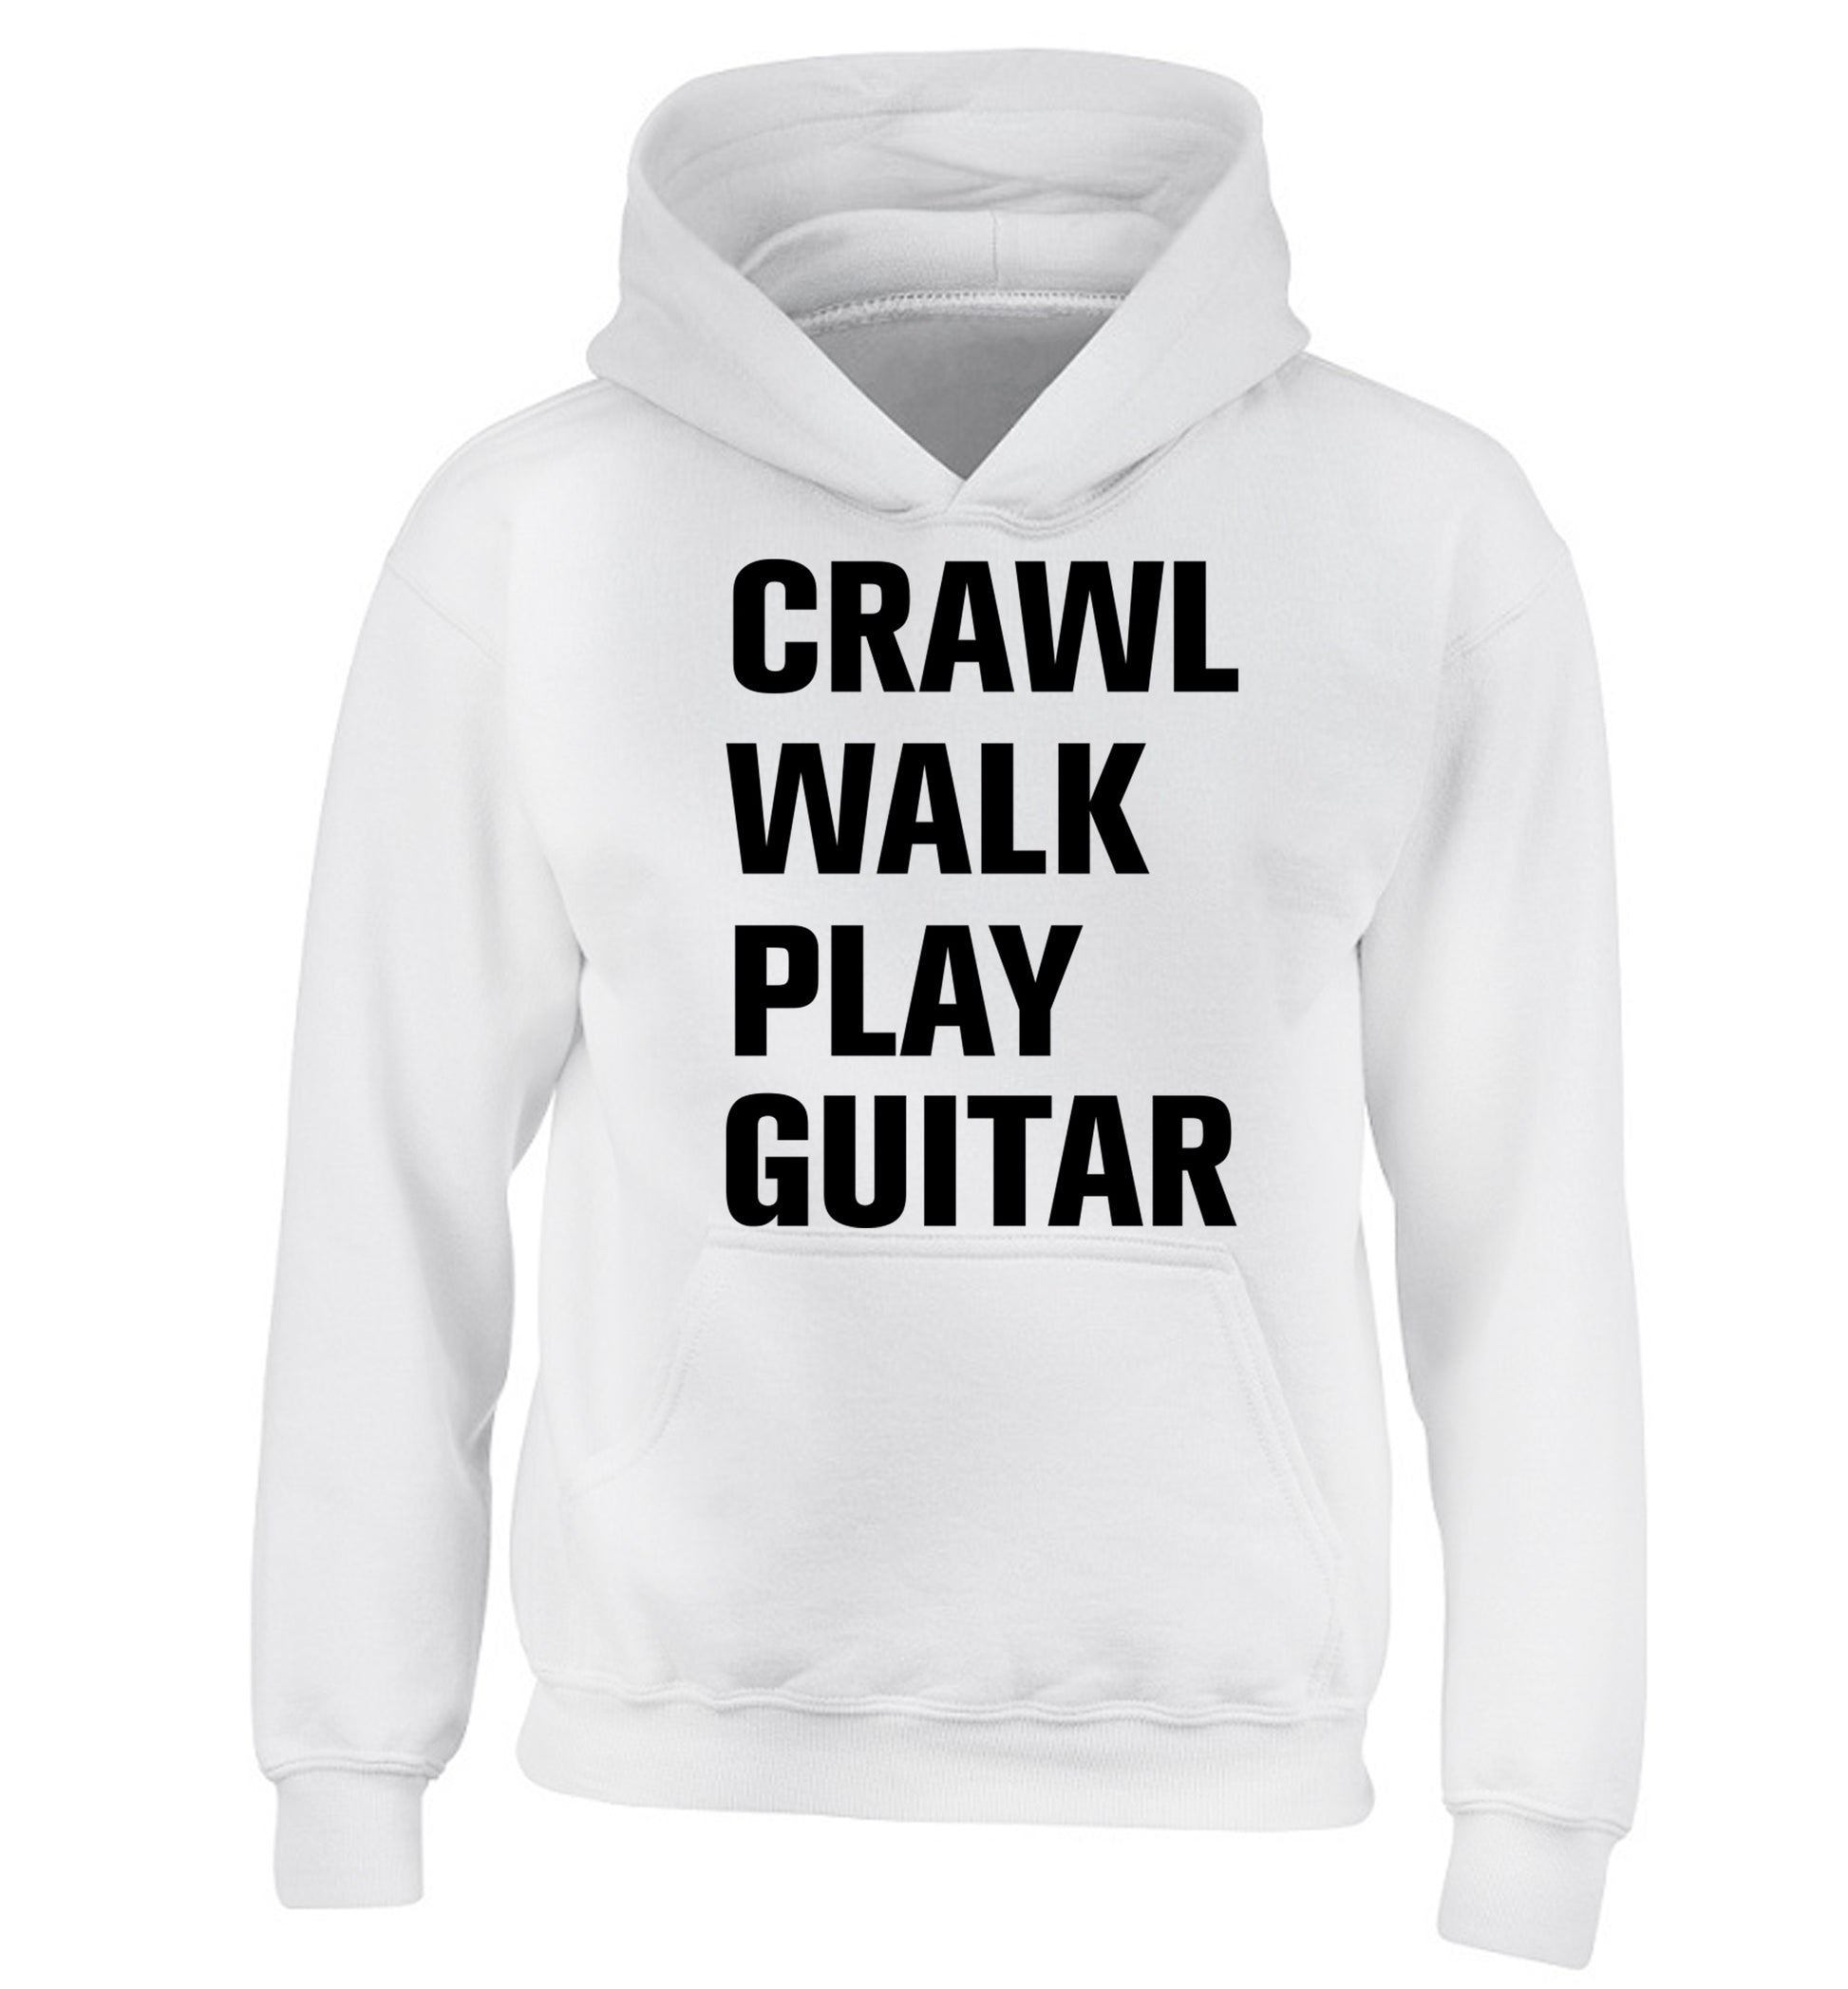 Crawl walk play guitar children's white hoodie 12-13 Years